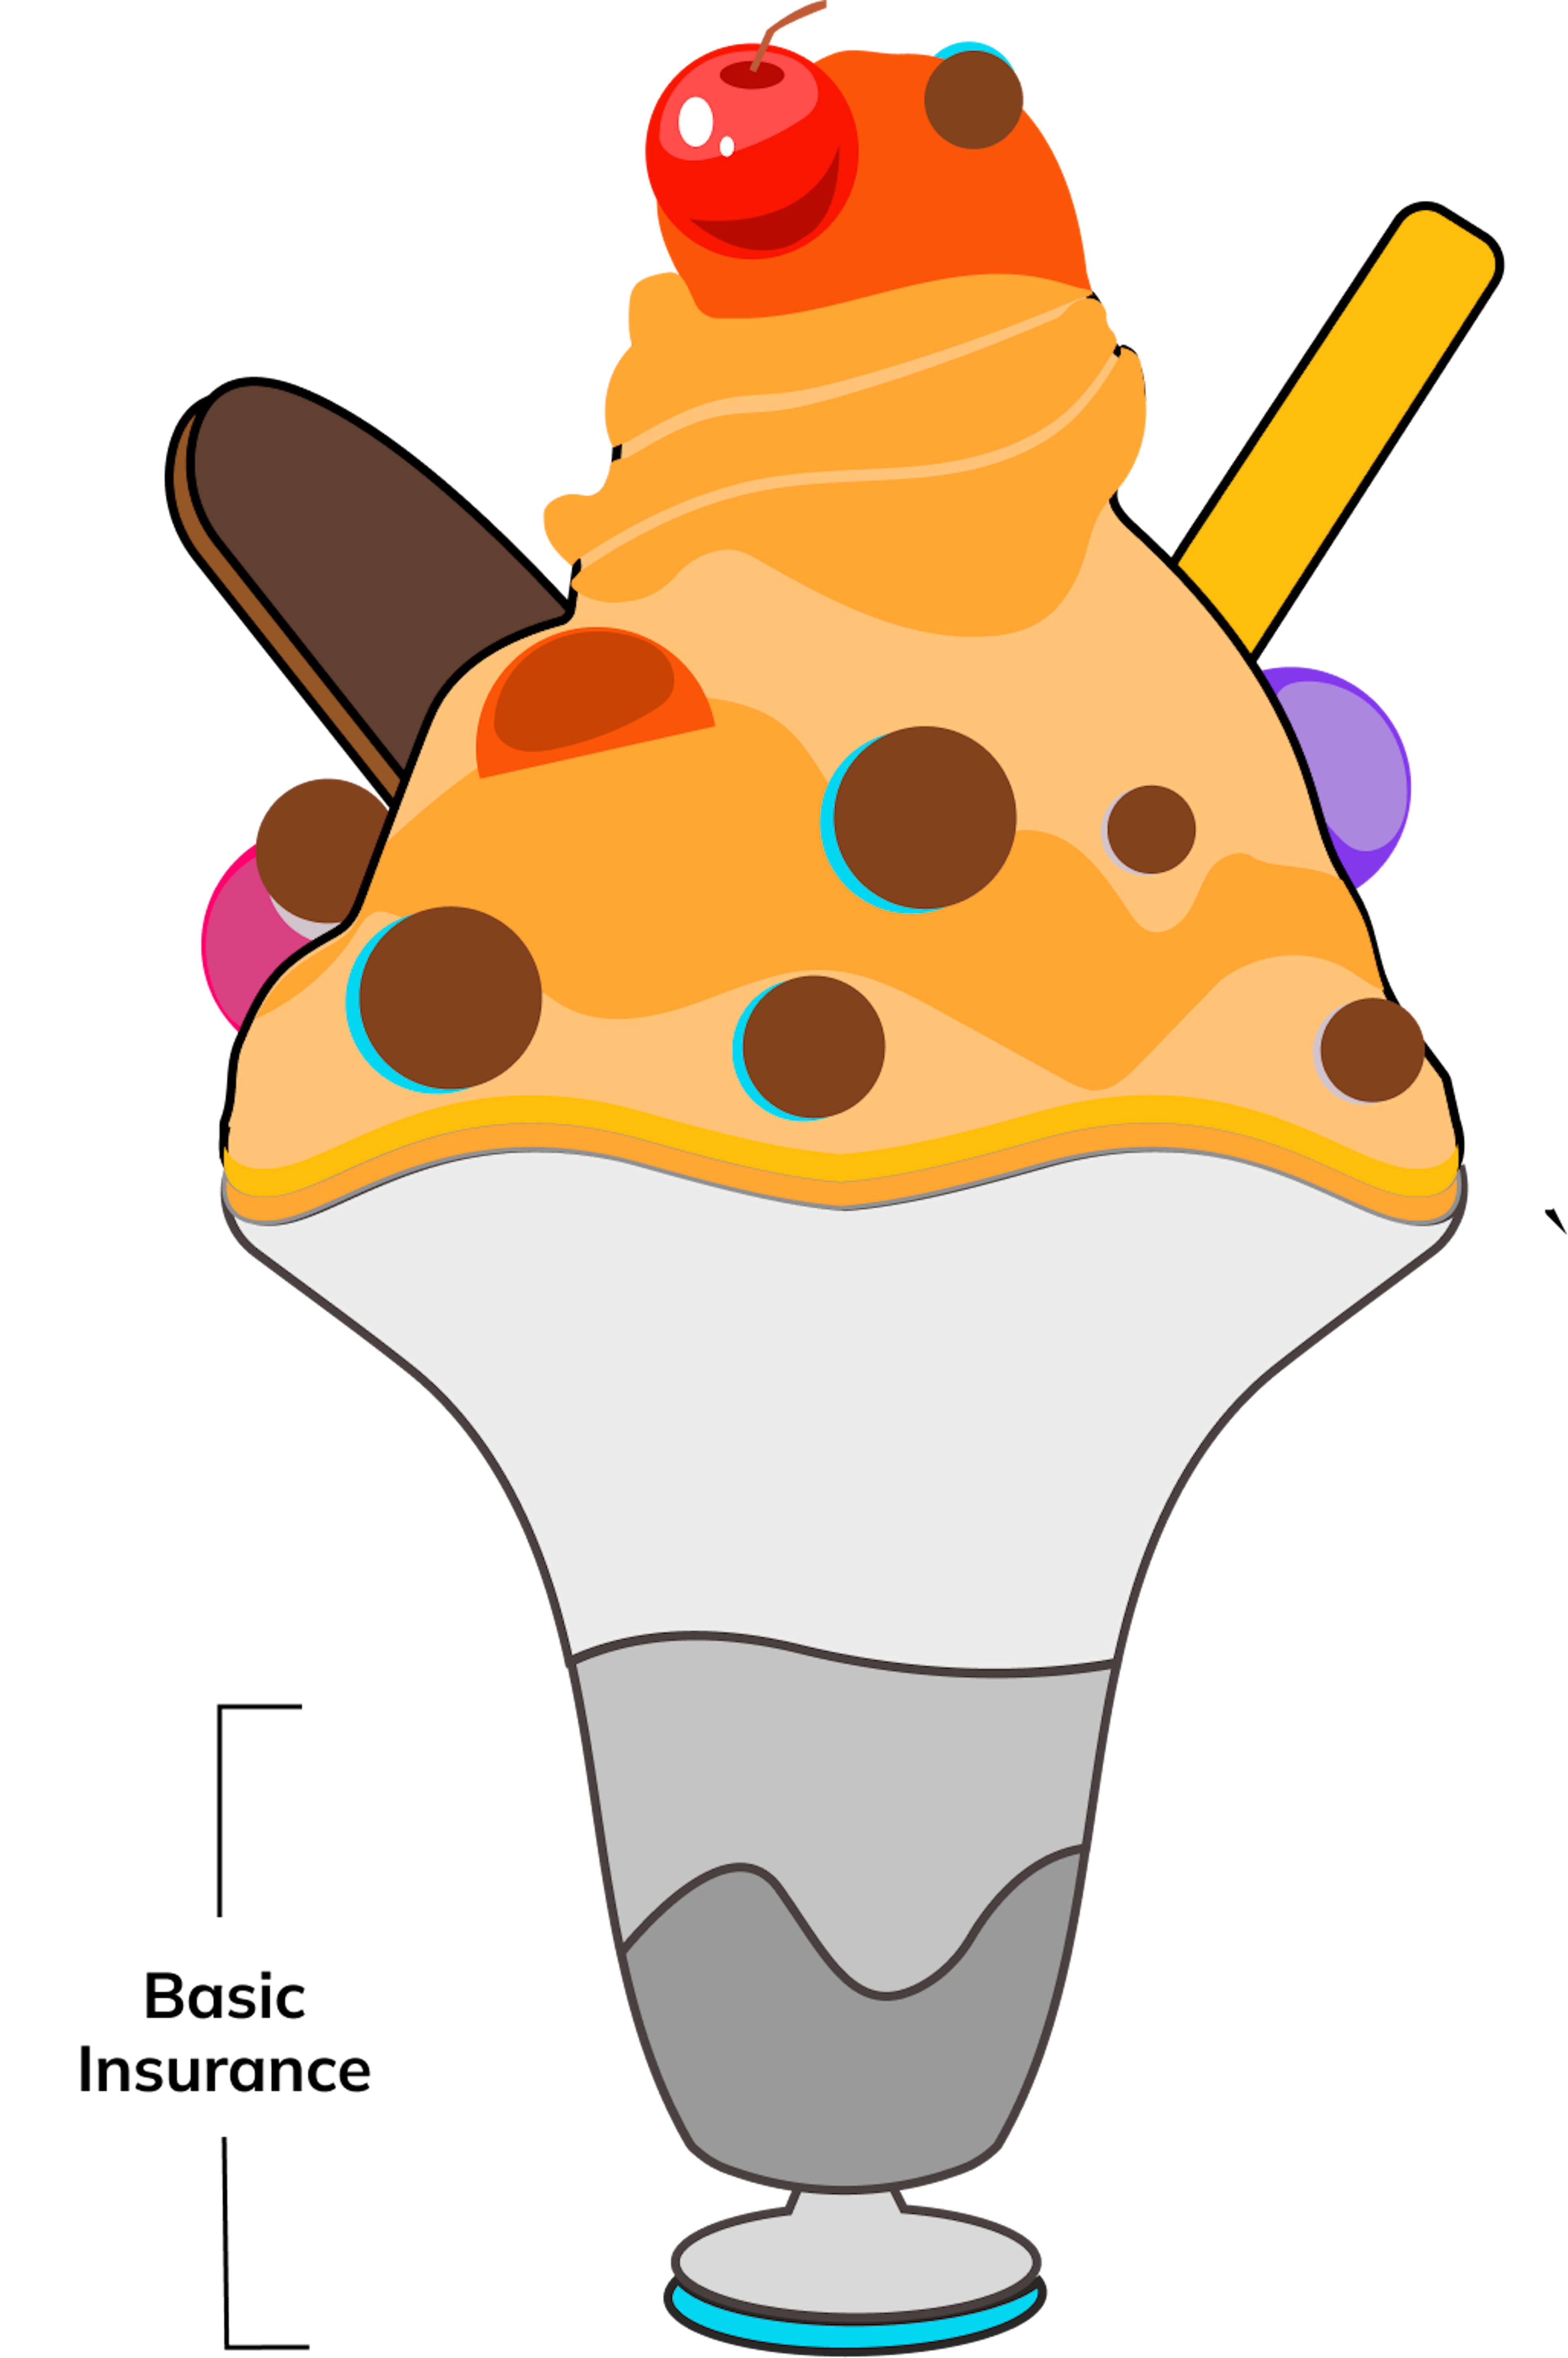 illustration of icecream sundae